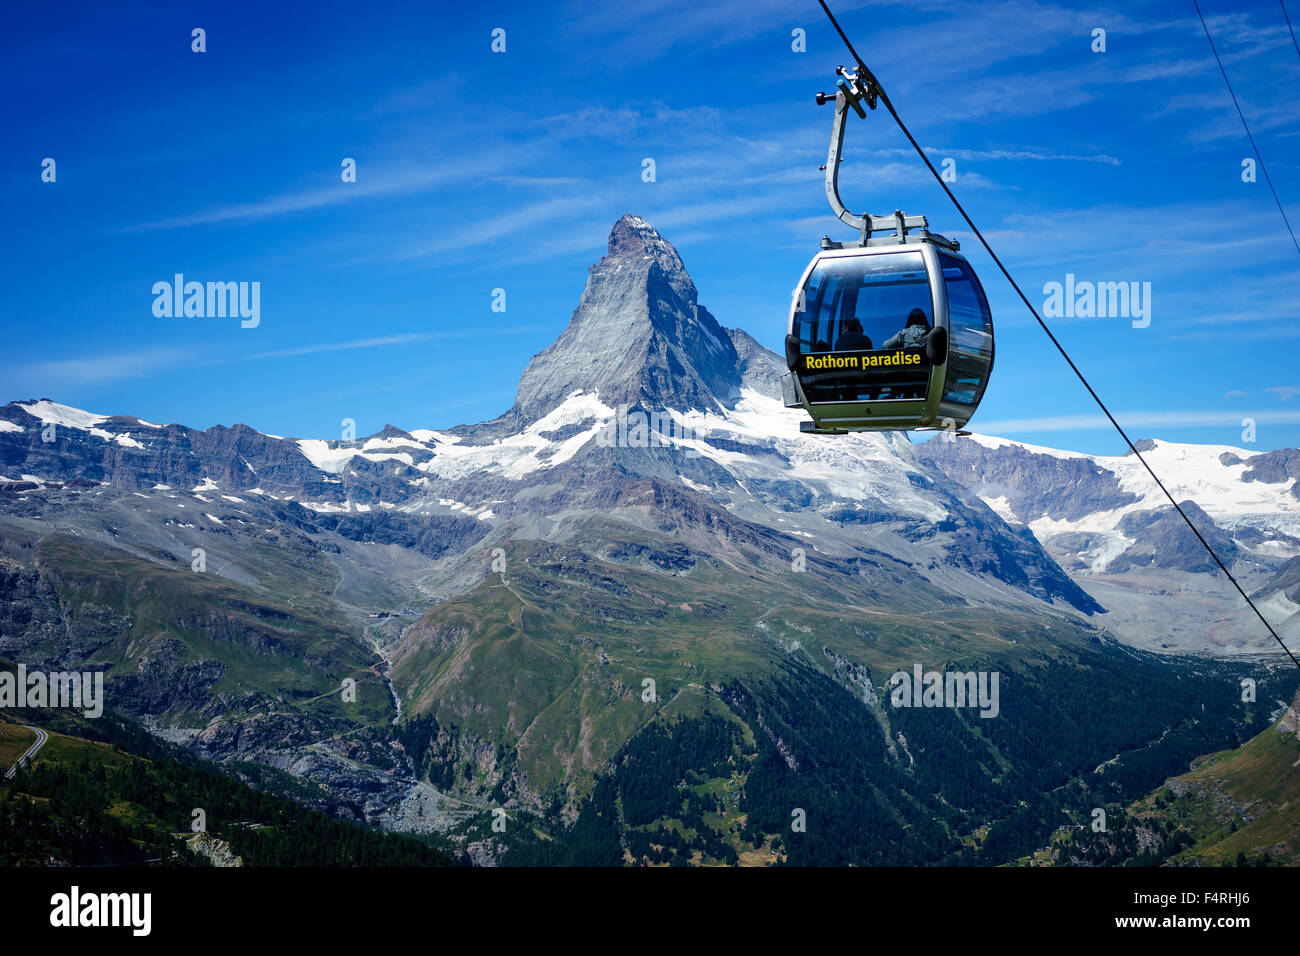 Un téléphérique monte passé Matterhorn peak. Juillet, 2015. Cervin, Suisse. Banque D'Images